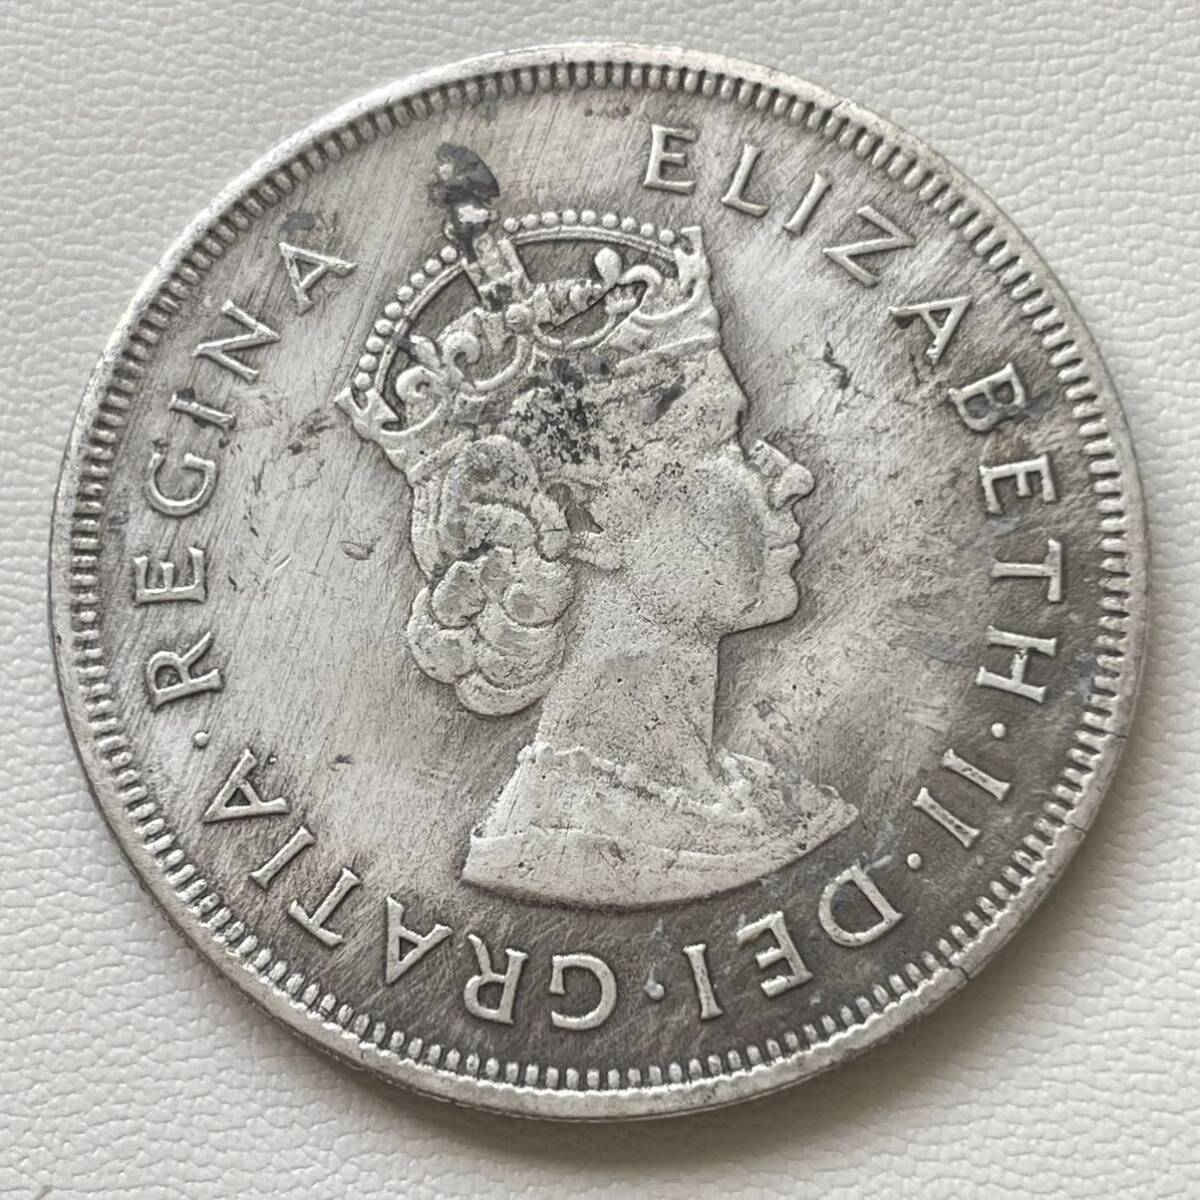 イギリス 硬貨 古銭 バミューダ諸島 1959年 エリザベス2世女王 植民地設立350周年記念 記念幣 コイン 重22.71g_画像2